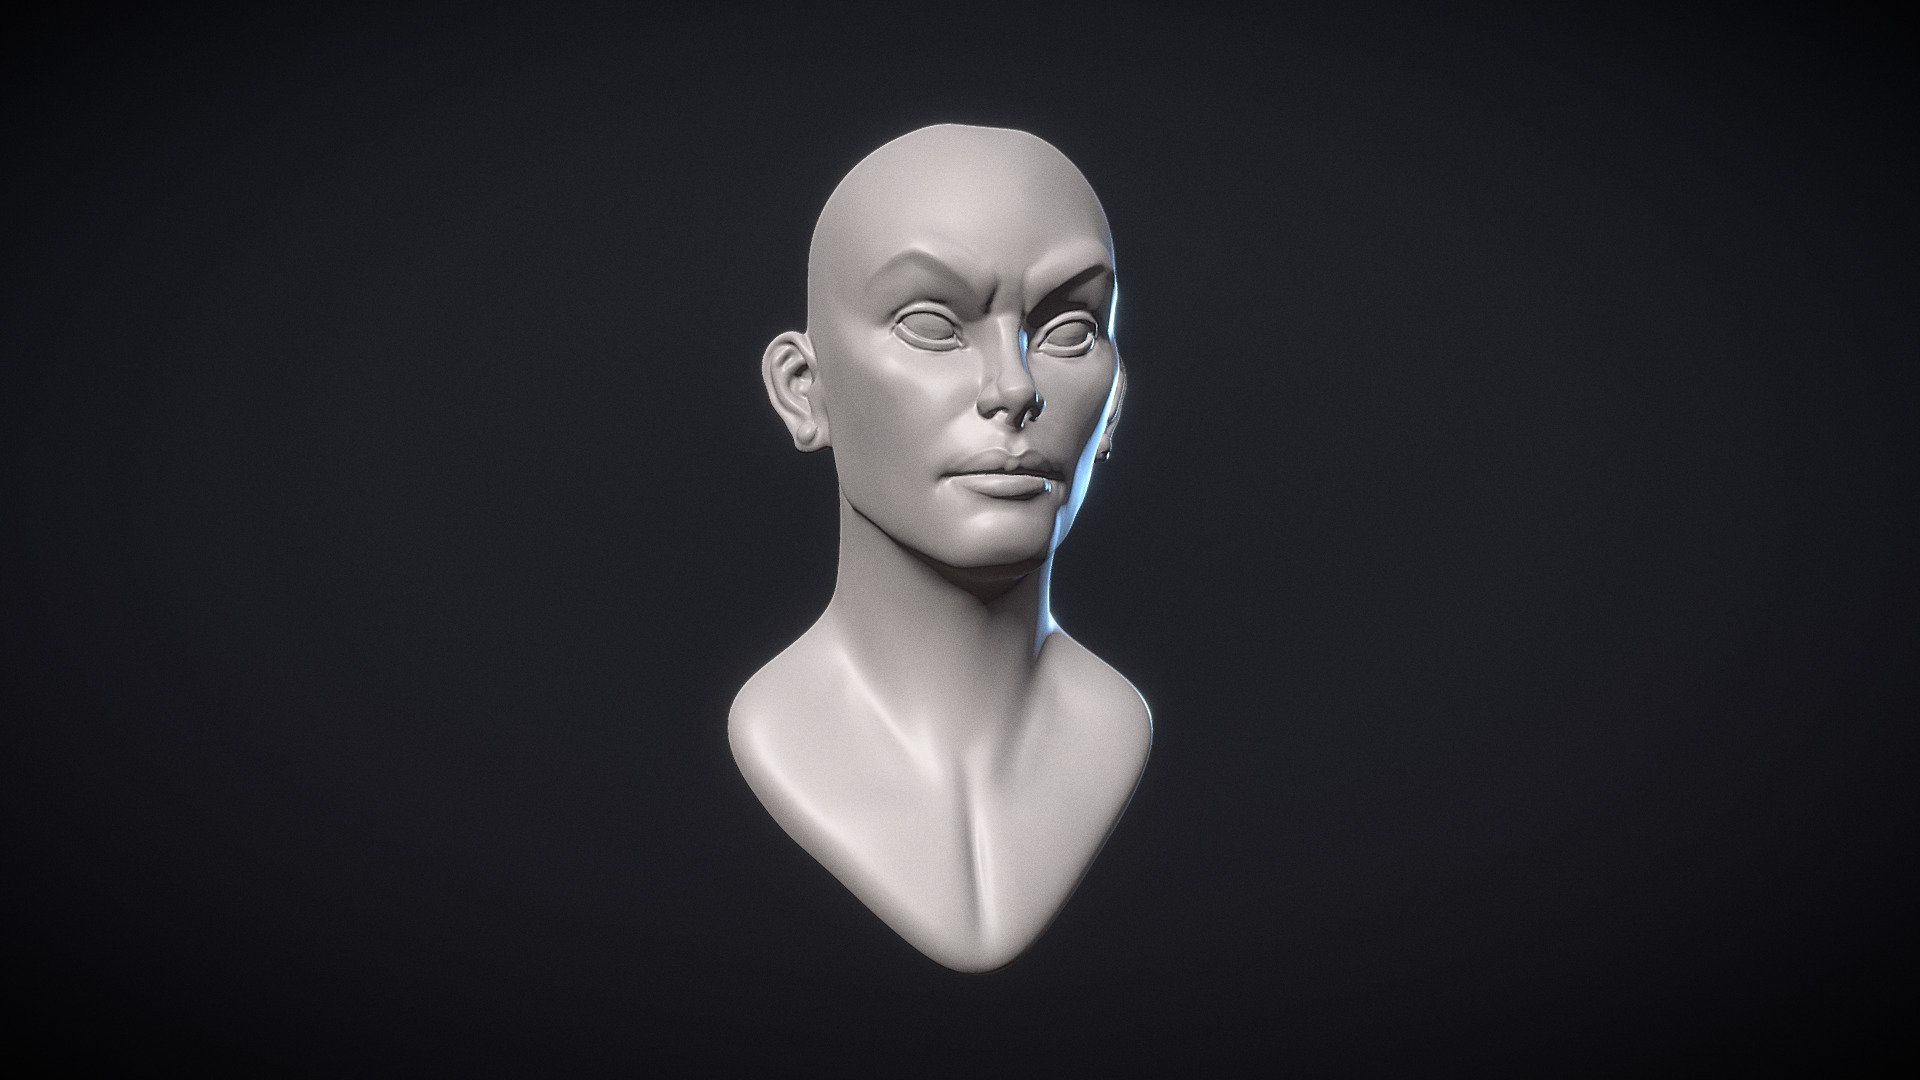 Stylized female head sculpt. Download Free 3D model by